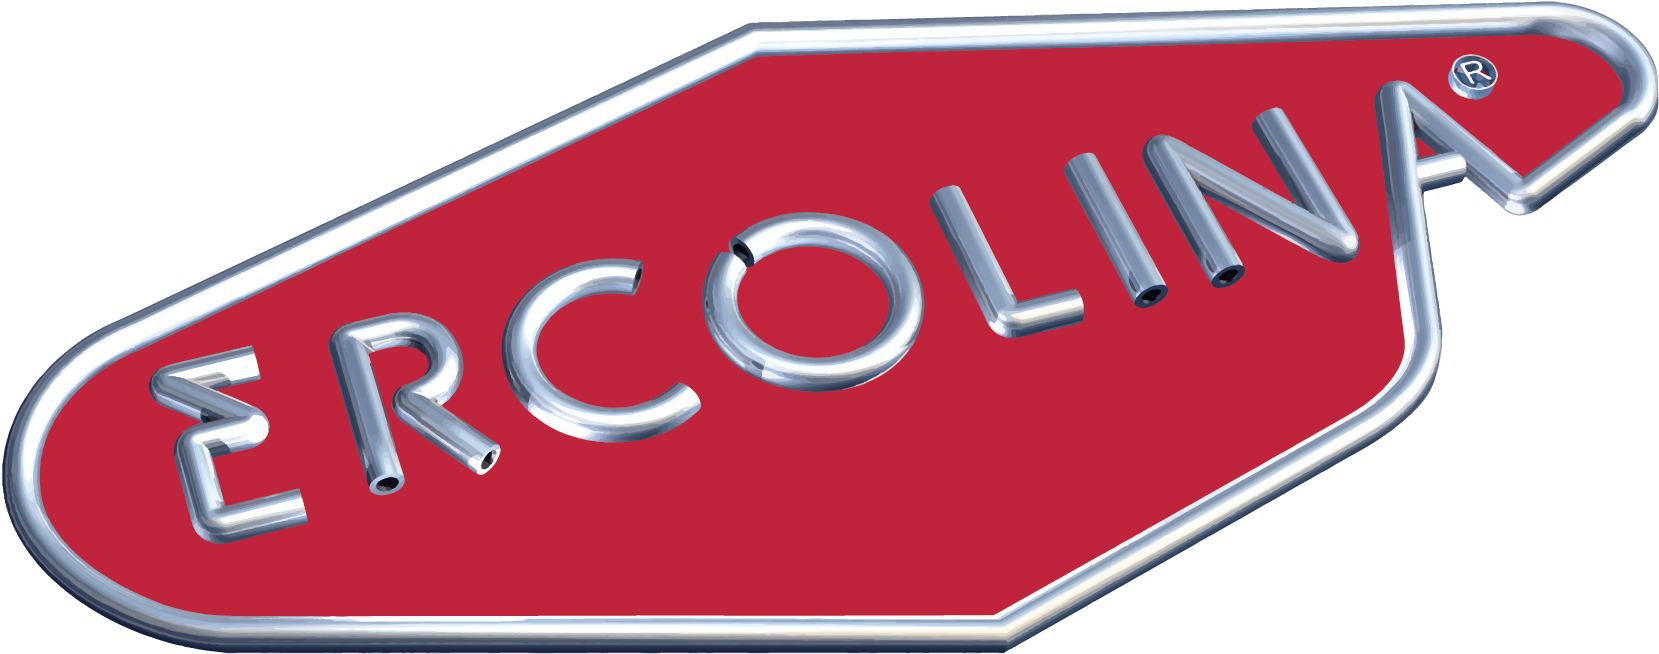 logo ERCOLINA